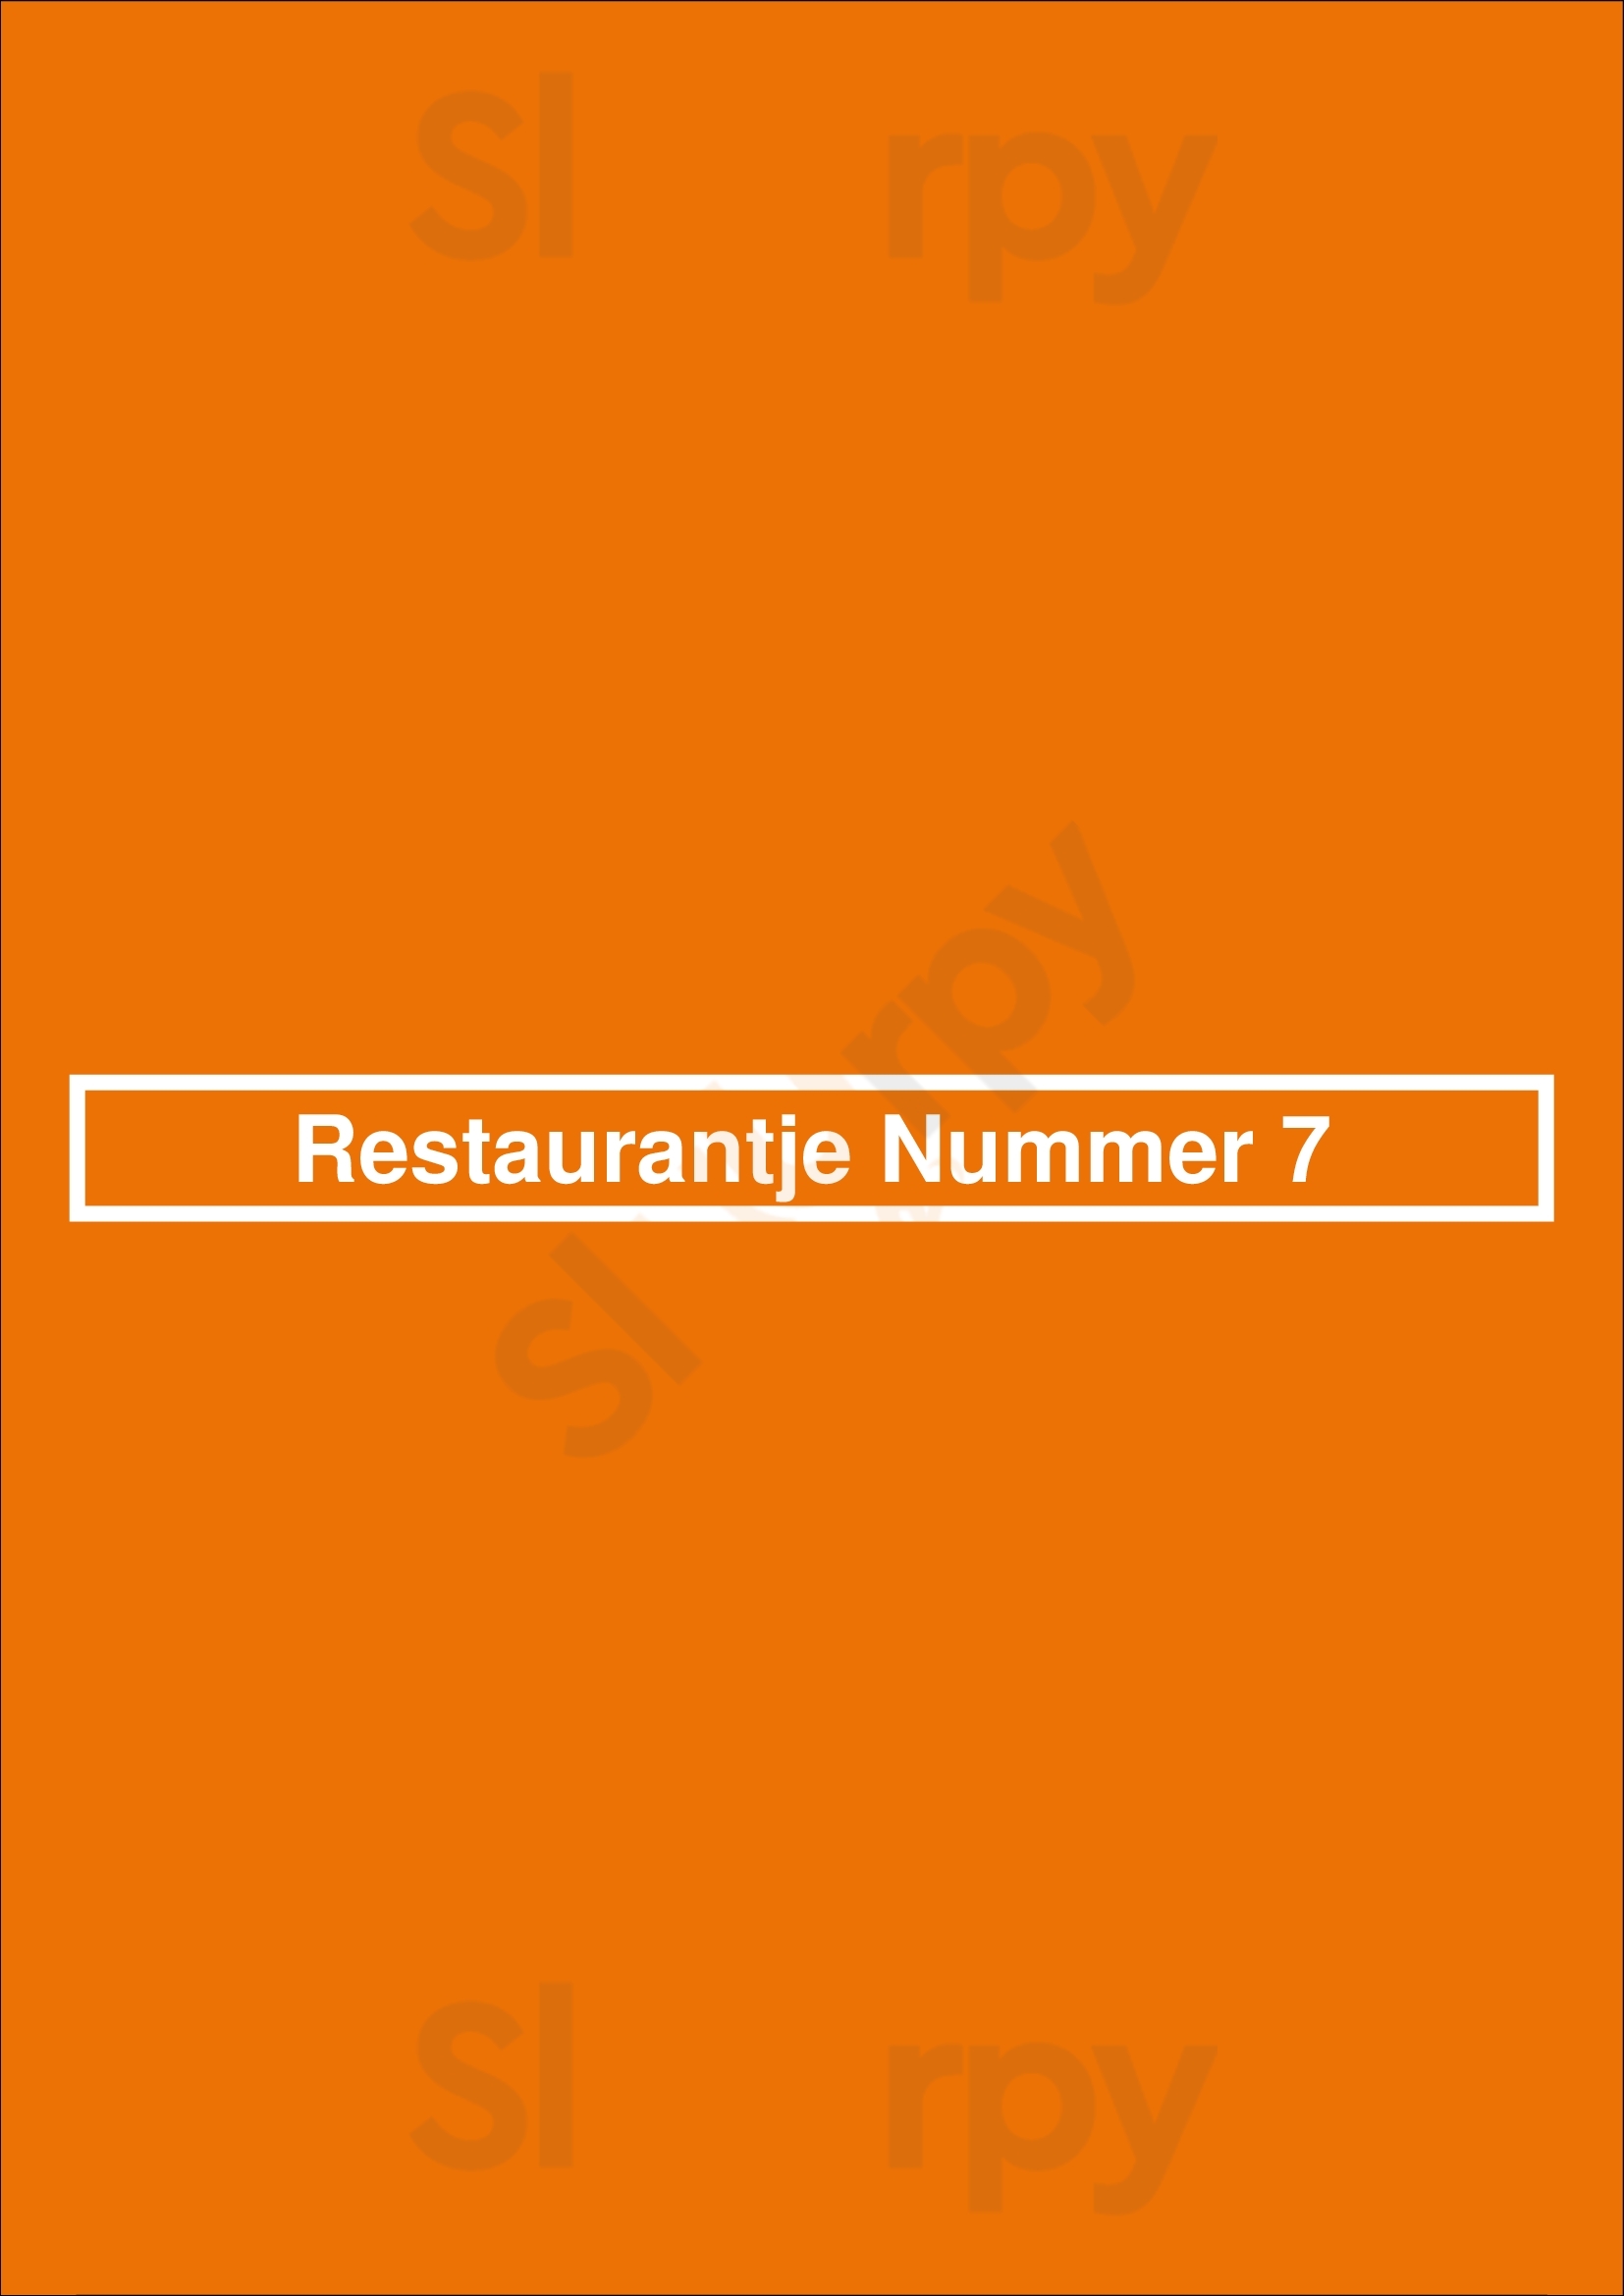 Restaurantje Nummer 7 Middelburg Menu - 1